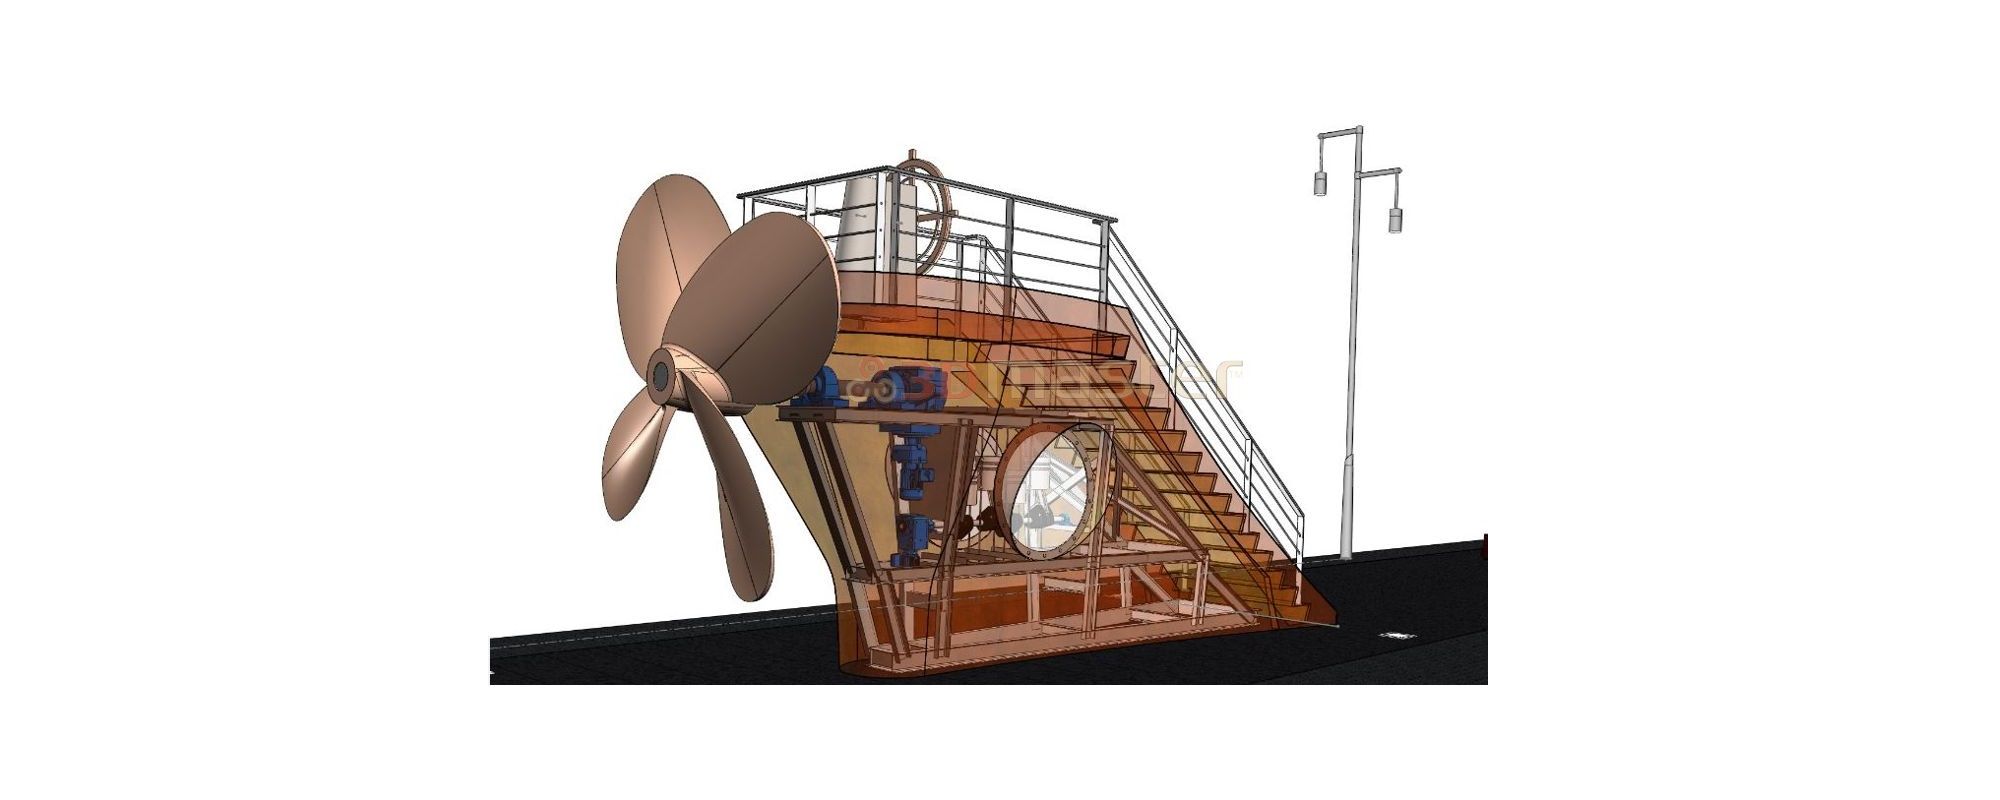 Public object - propeller at observation deck - 3DMaster